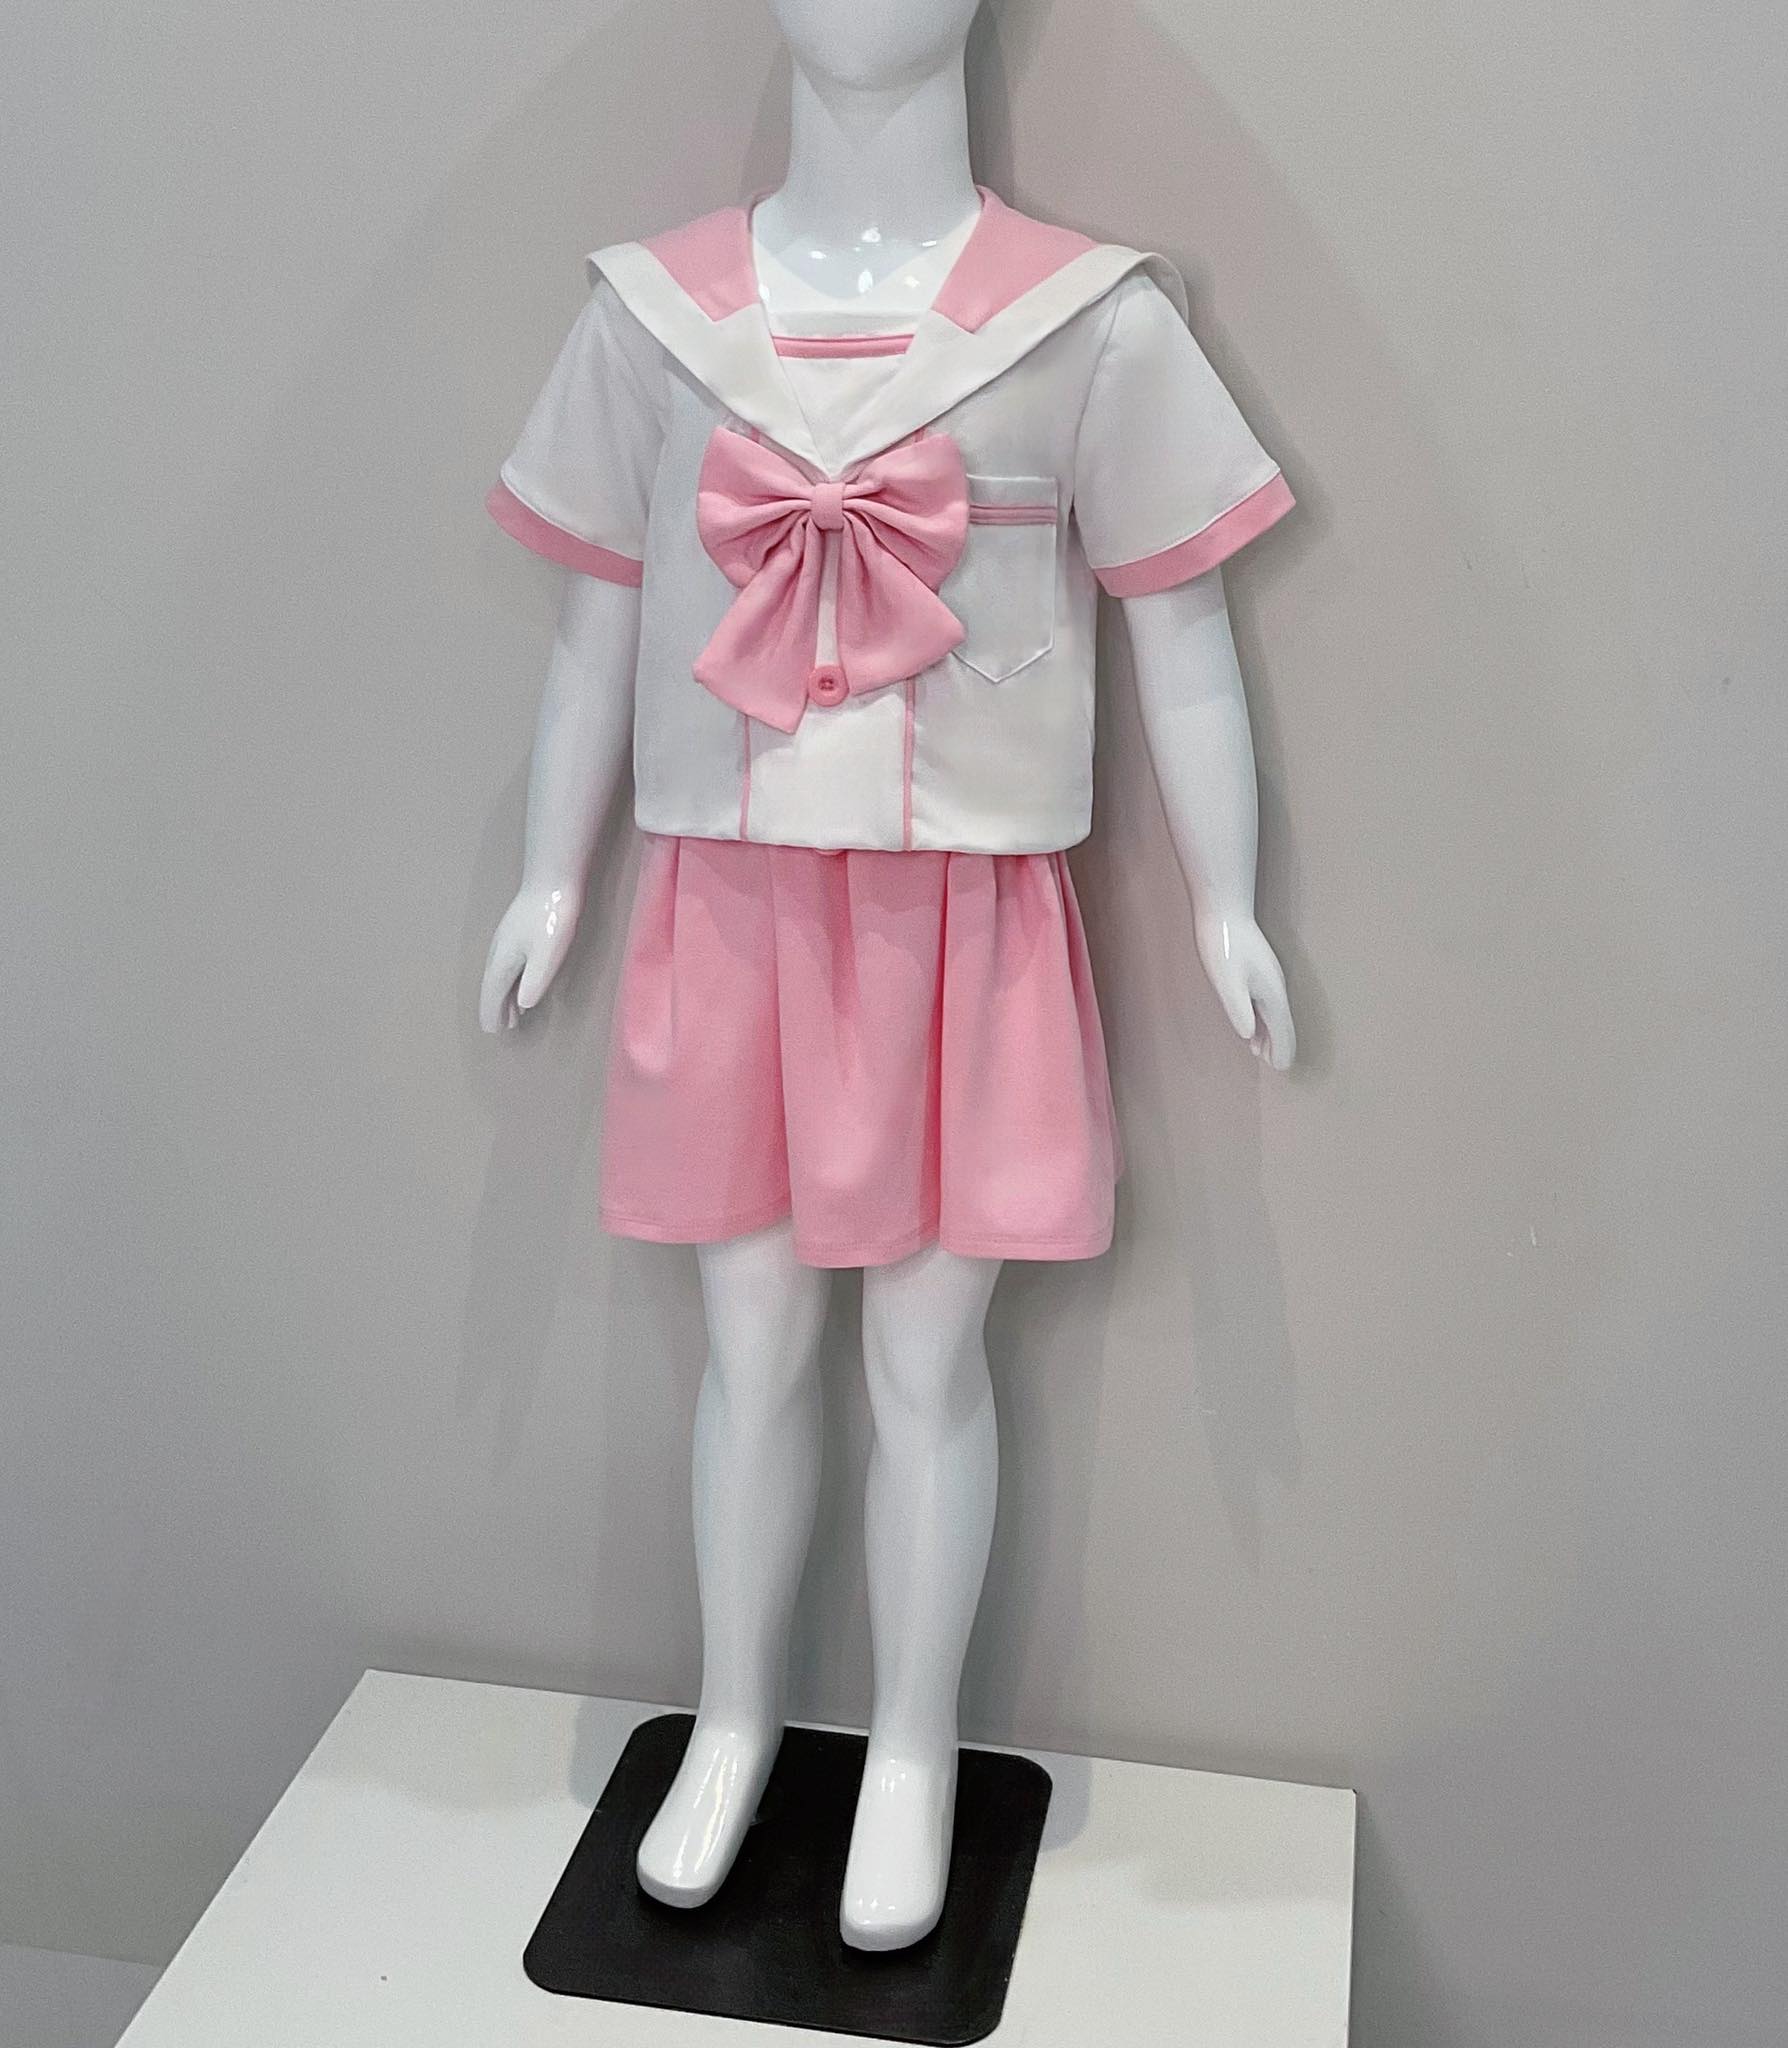 set đồng phục nữ sinh trắng hồng bé gái kiểu Hàn Quốc từ 4-8 tuổi Gloria kids